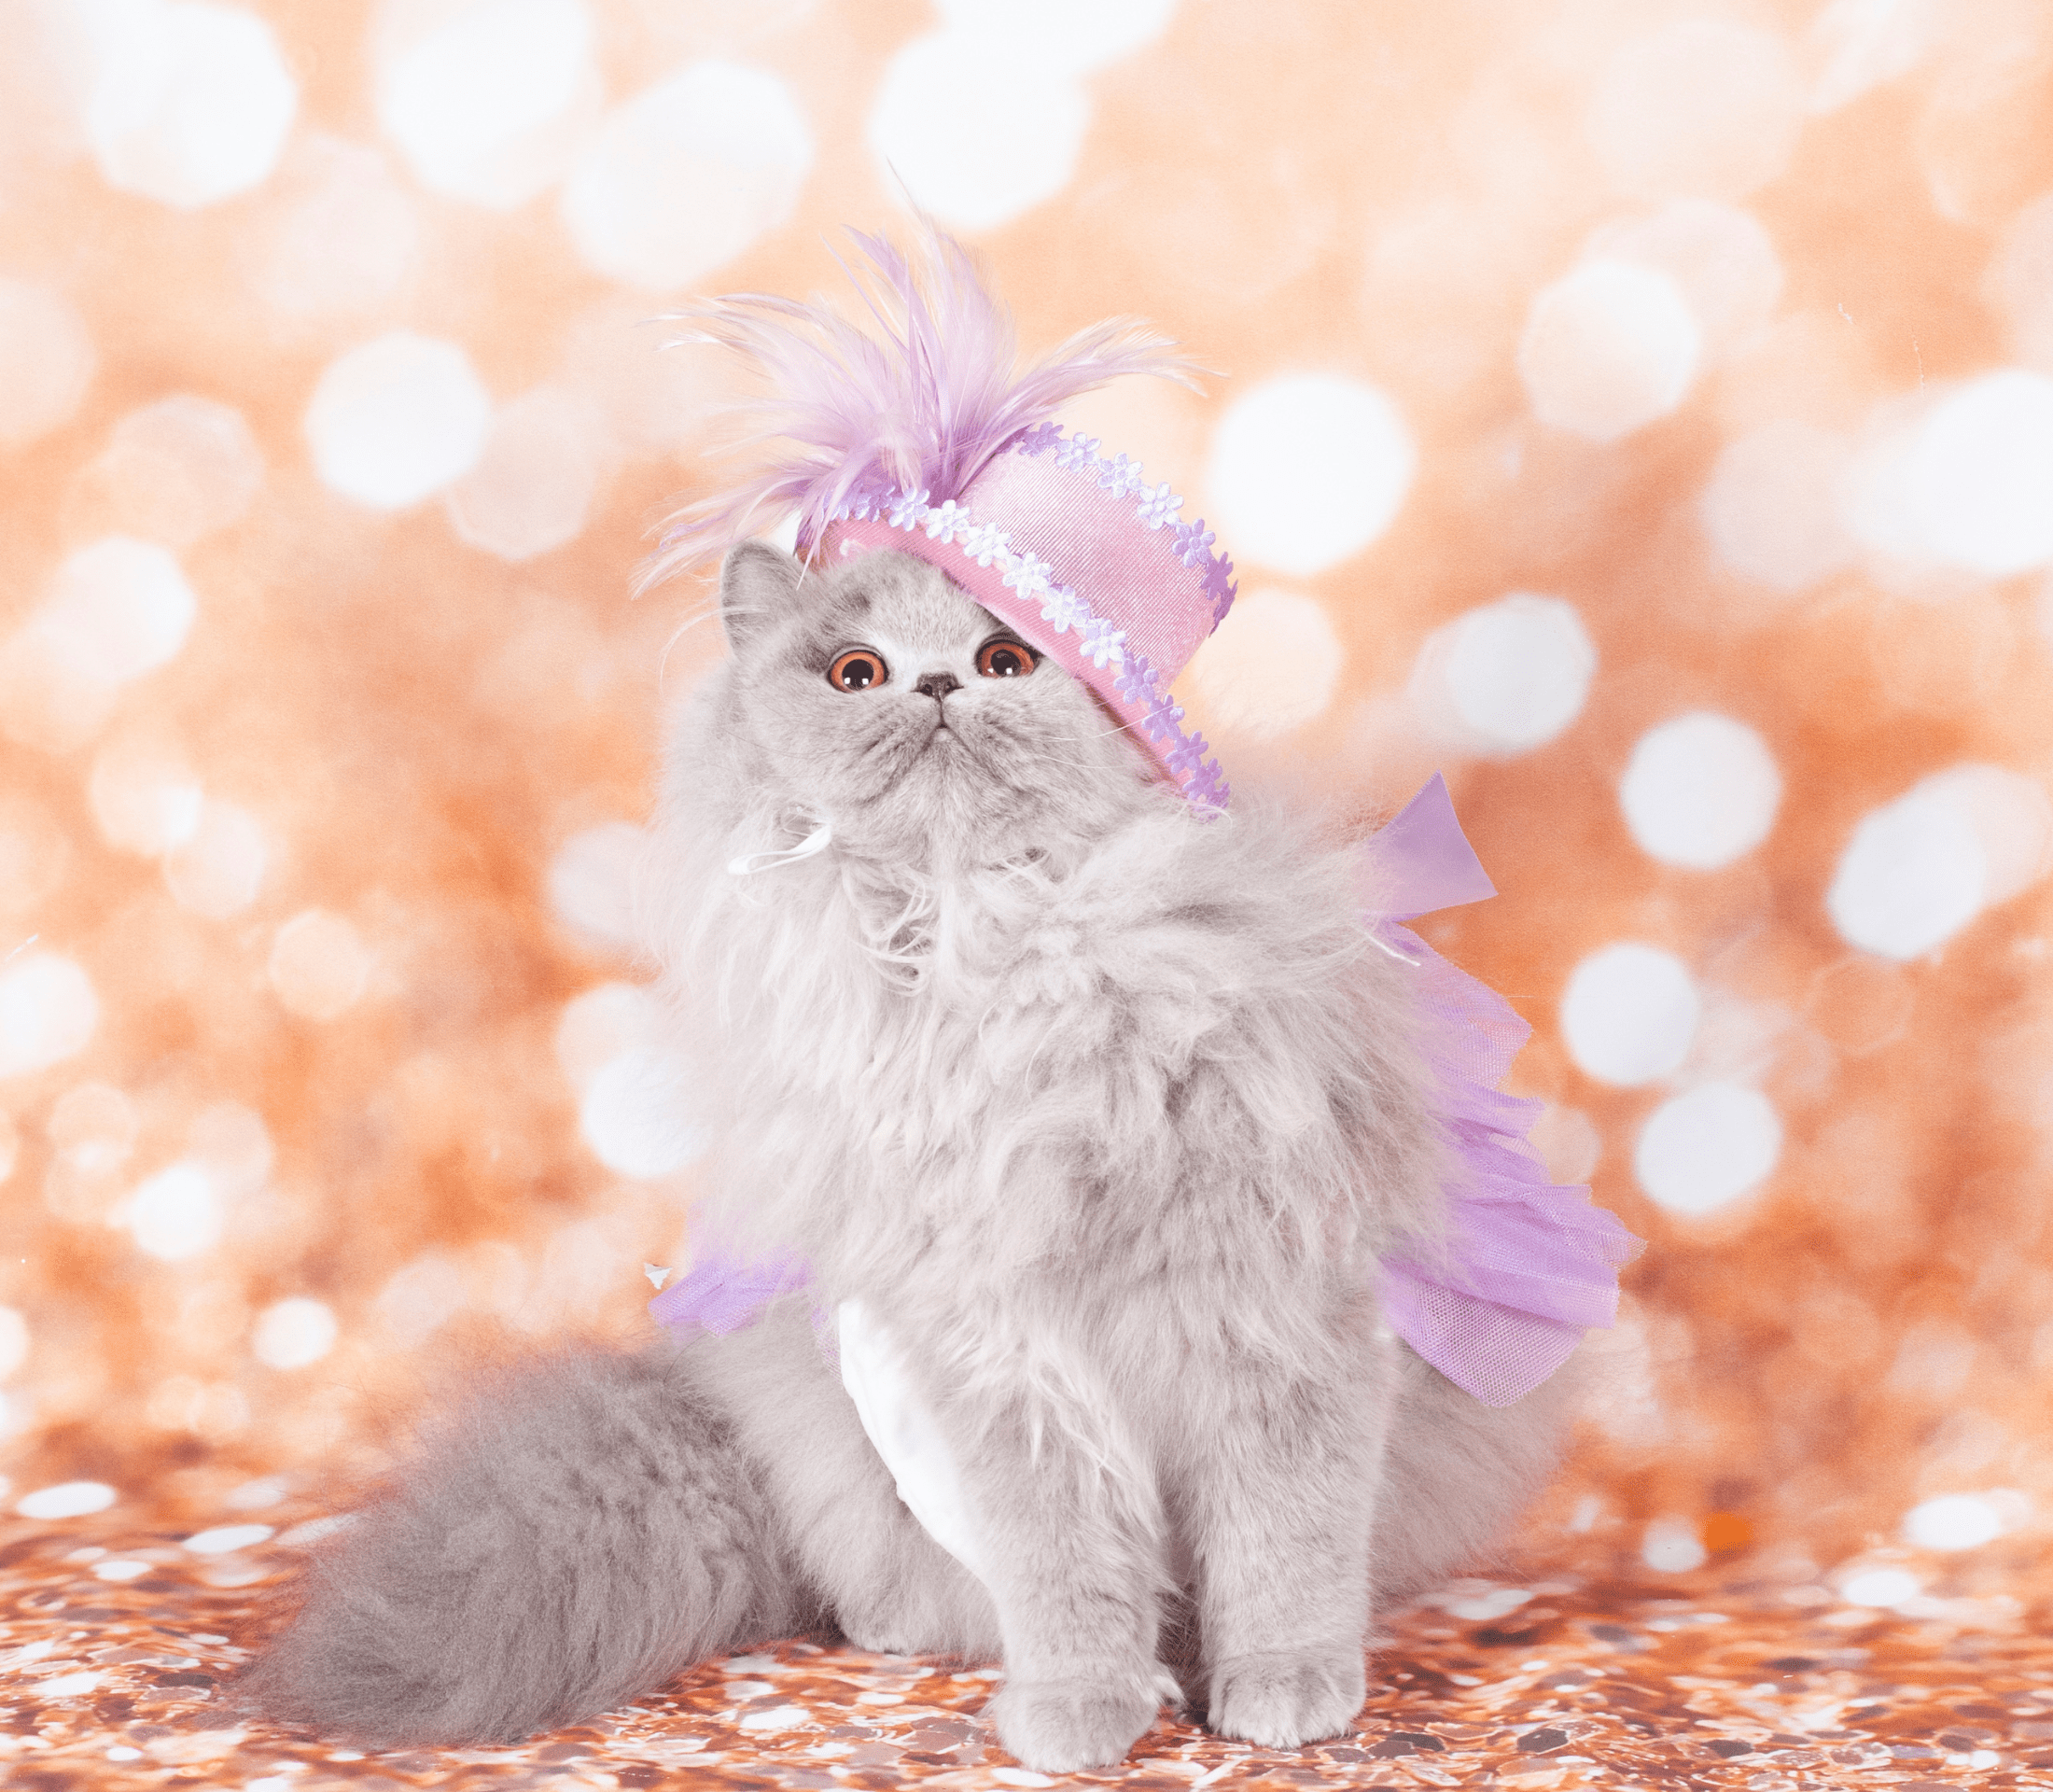 Gray furry cat with purple head wear